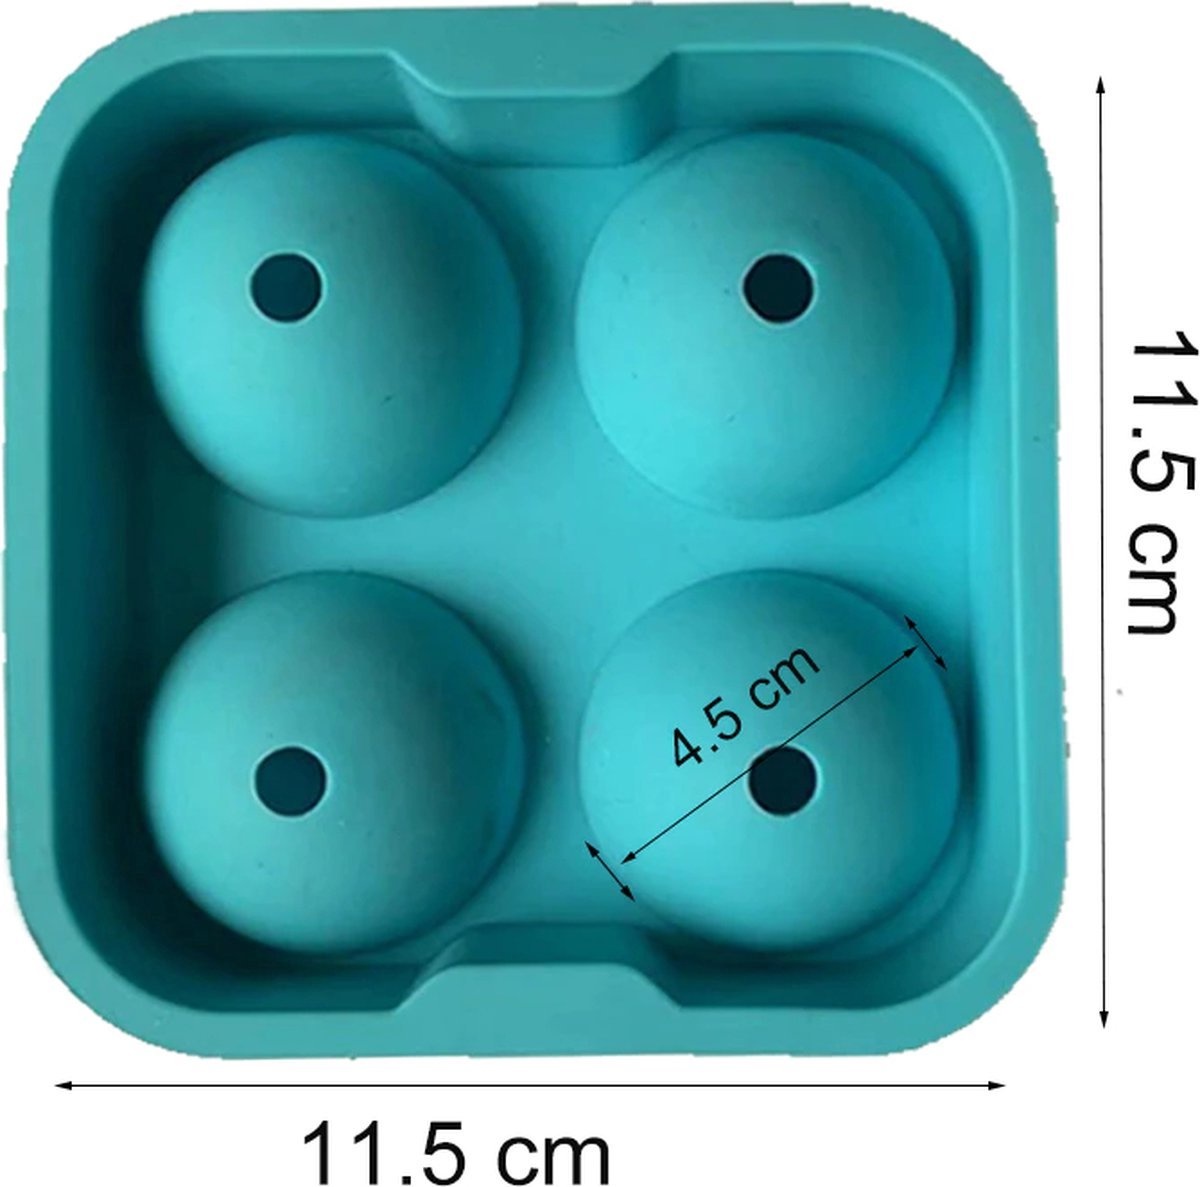 Investeren weten Vegetatie Siliconen IJsballenvorm - 4 ijsballen Ø 4,5cm - Whiskey ijsballen -  Lichtblauw - 2 STUKS | Devoordeligedrogisterij.nl